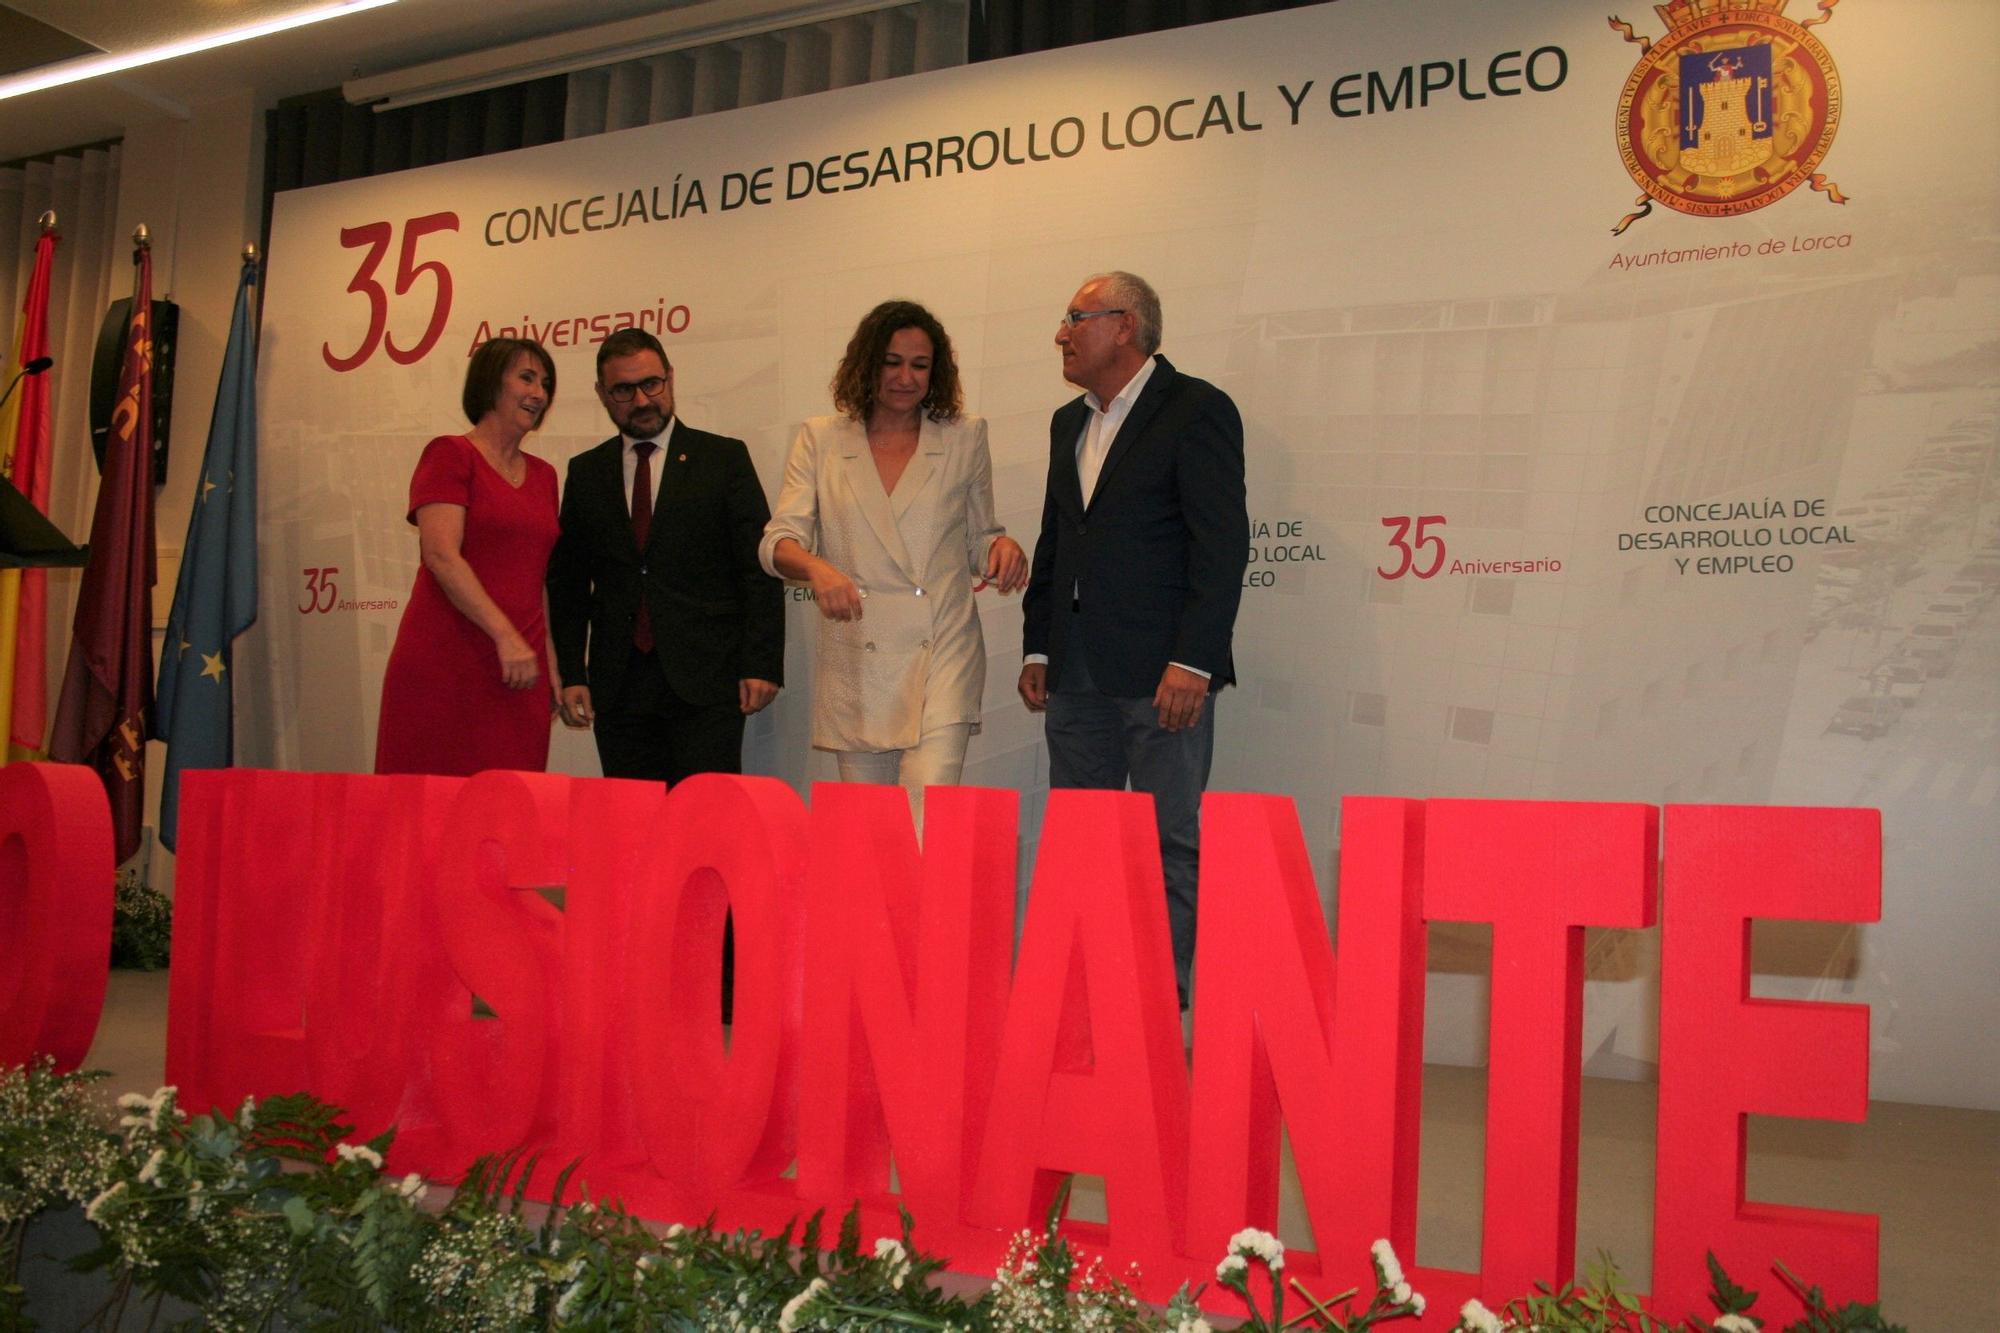 35 aniversario de la Concejalía de Desarrollo Local y Empleo de Lorca